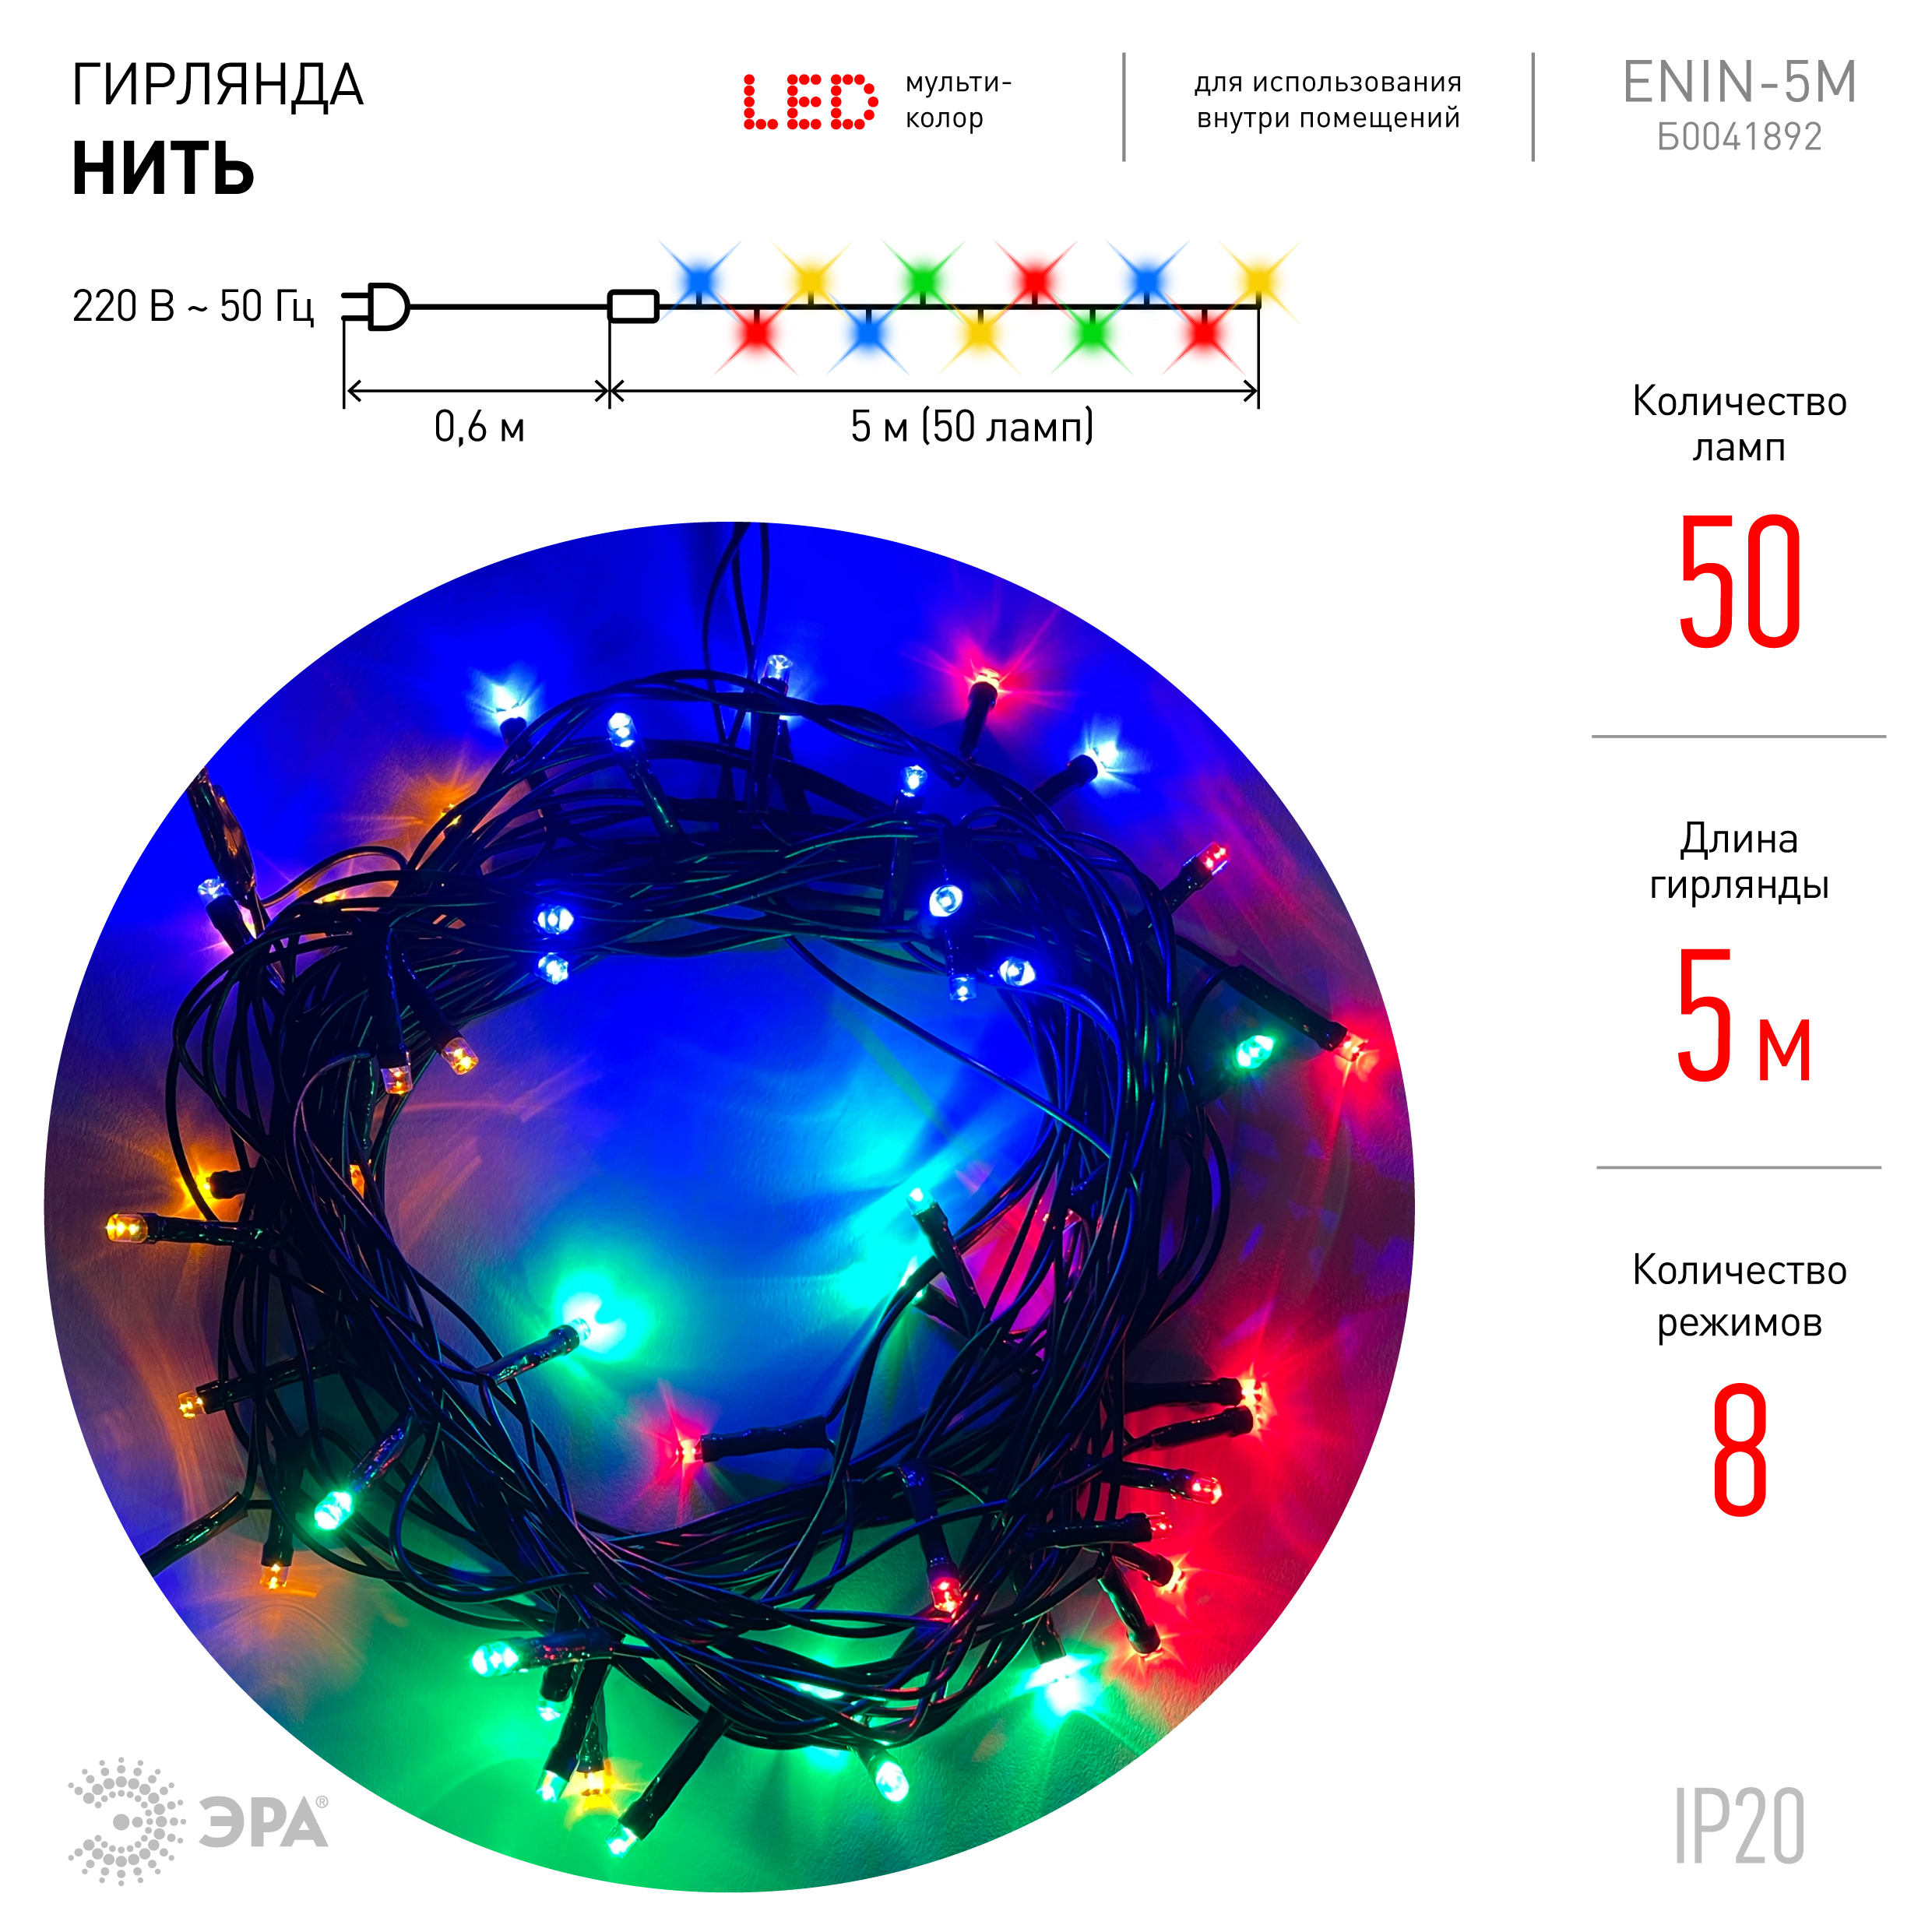 Гирлянда ЭРА светодиодная нить, ламп: 50шт., 5м, разноцветный (Б0041892)